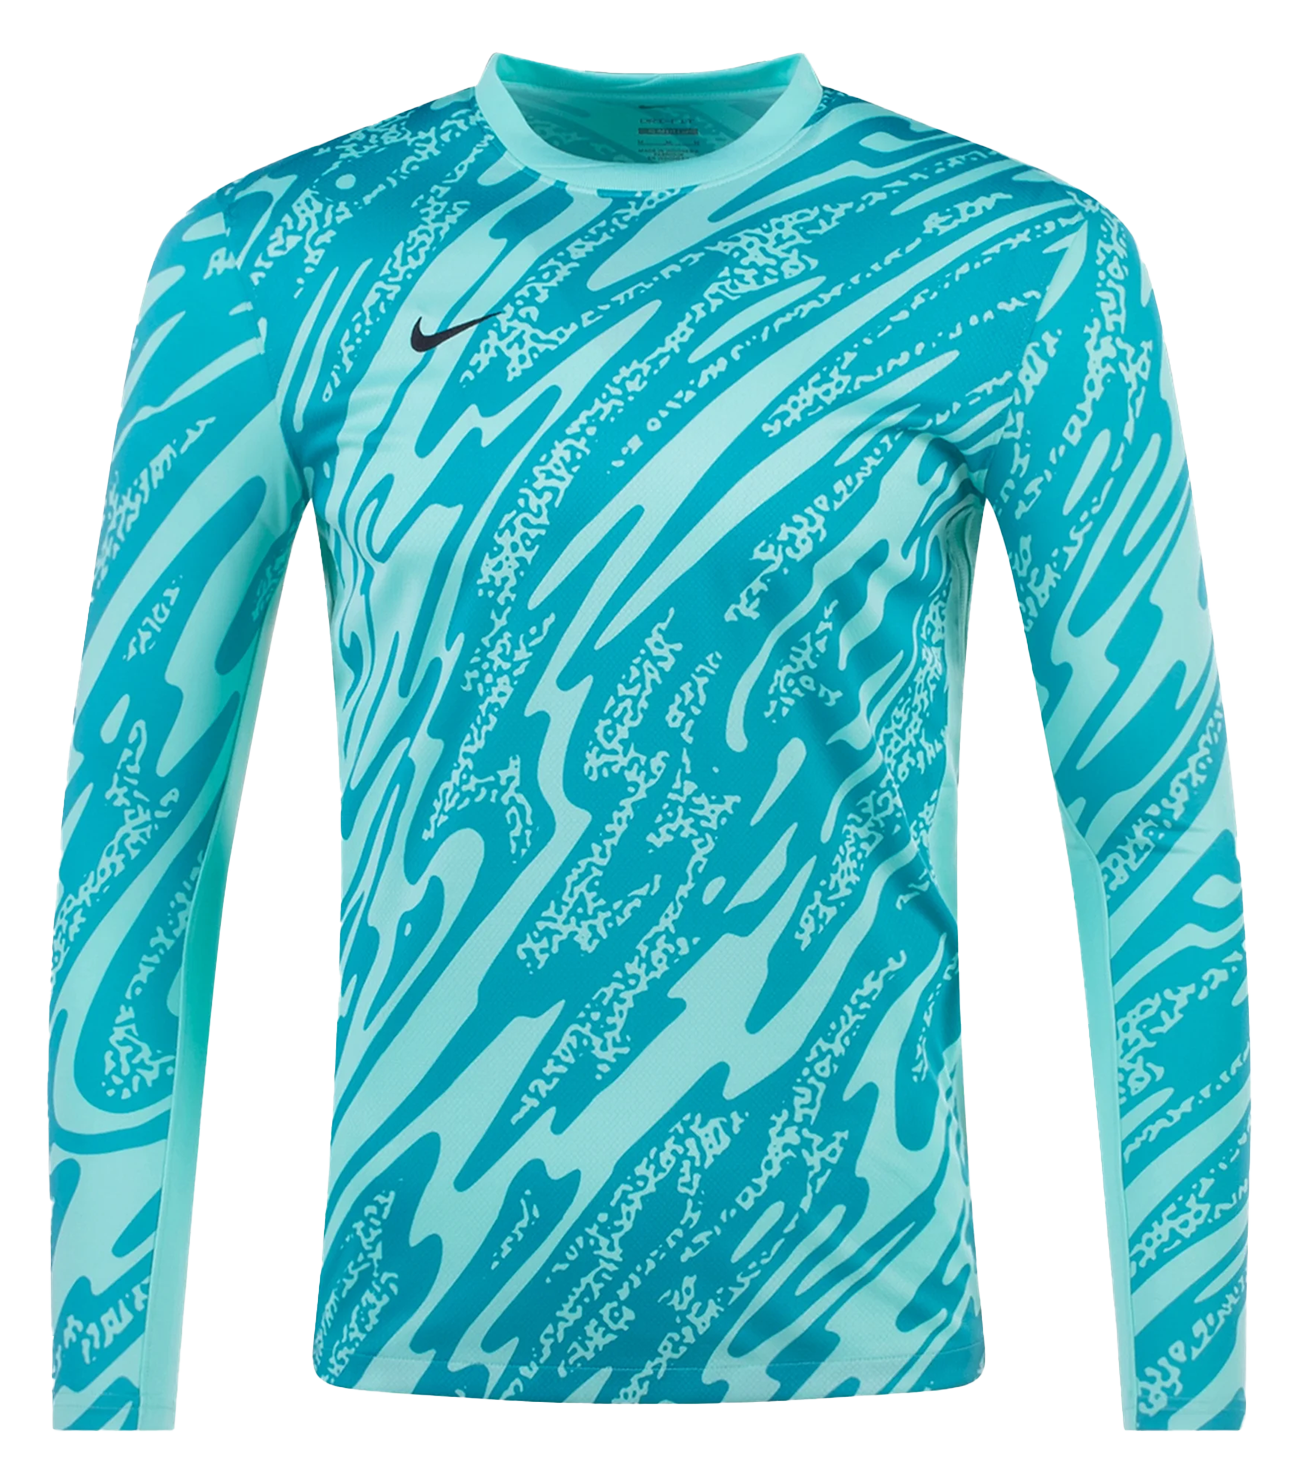 Jersey Nike Gardien V Azul Turquesa